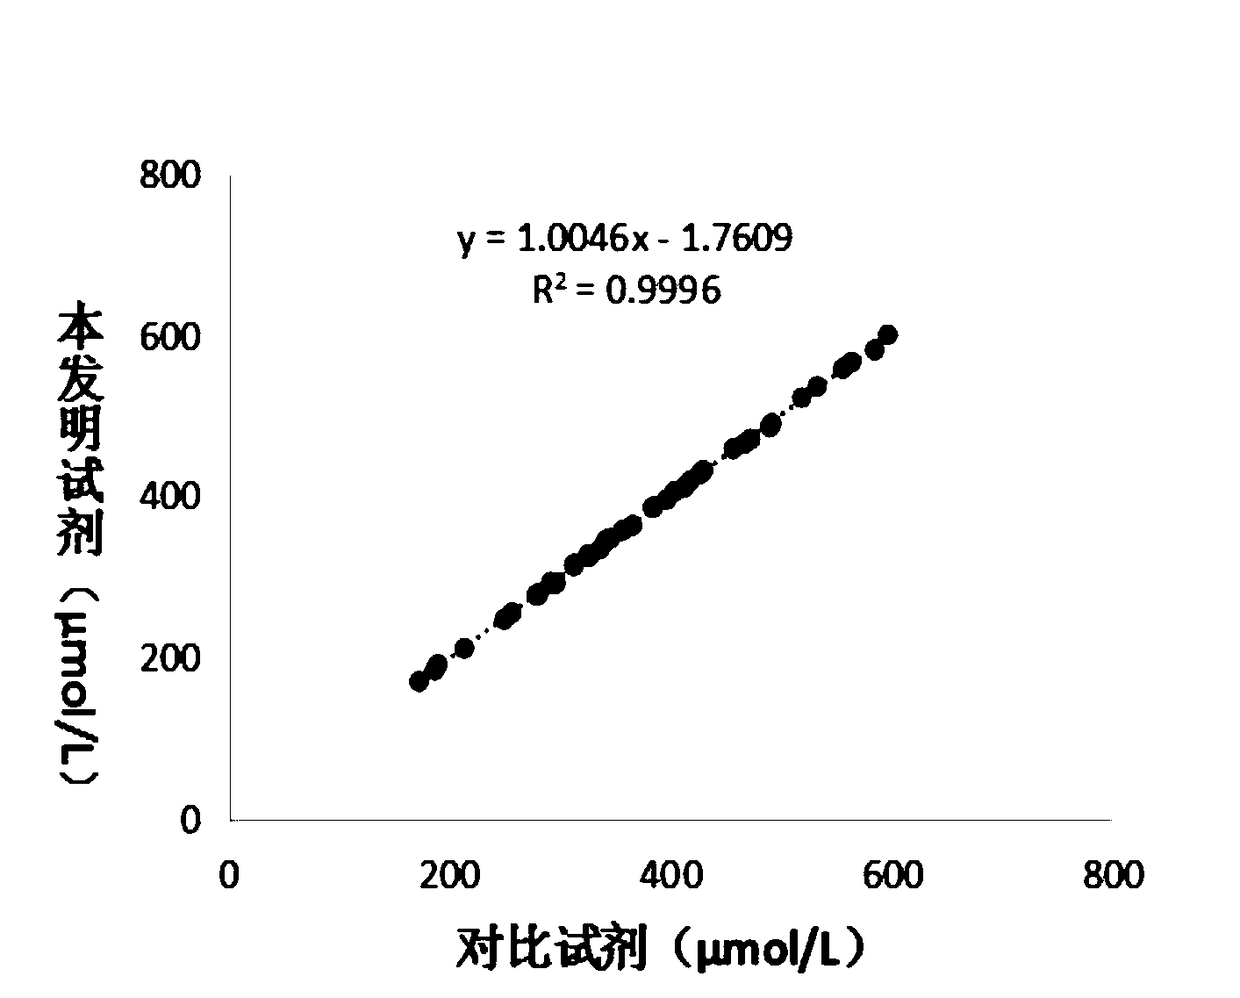 Enzymatic chemiluminescence based detection kit for UA (uric acid) determination